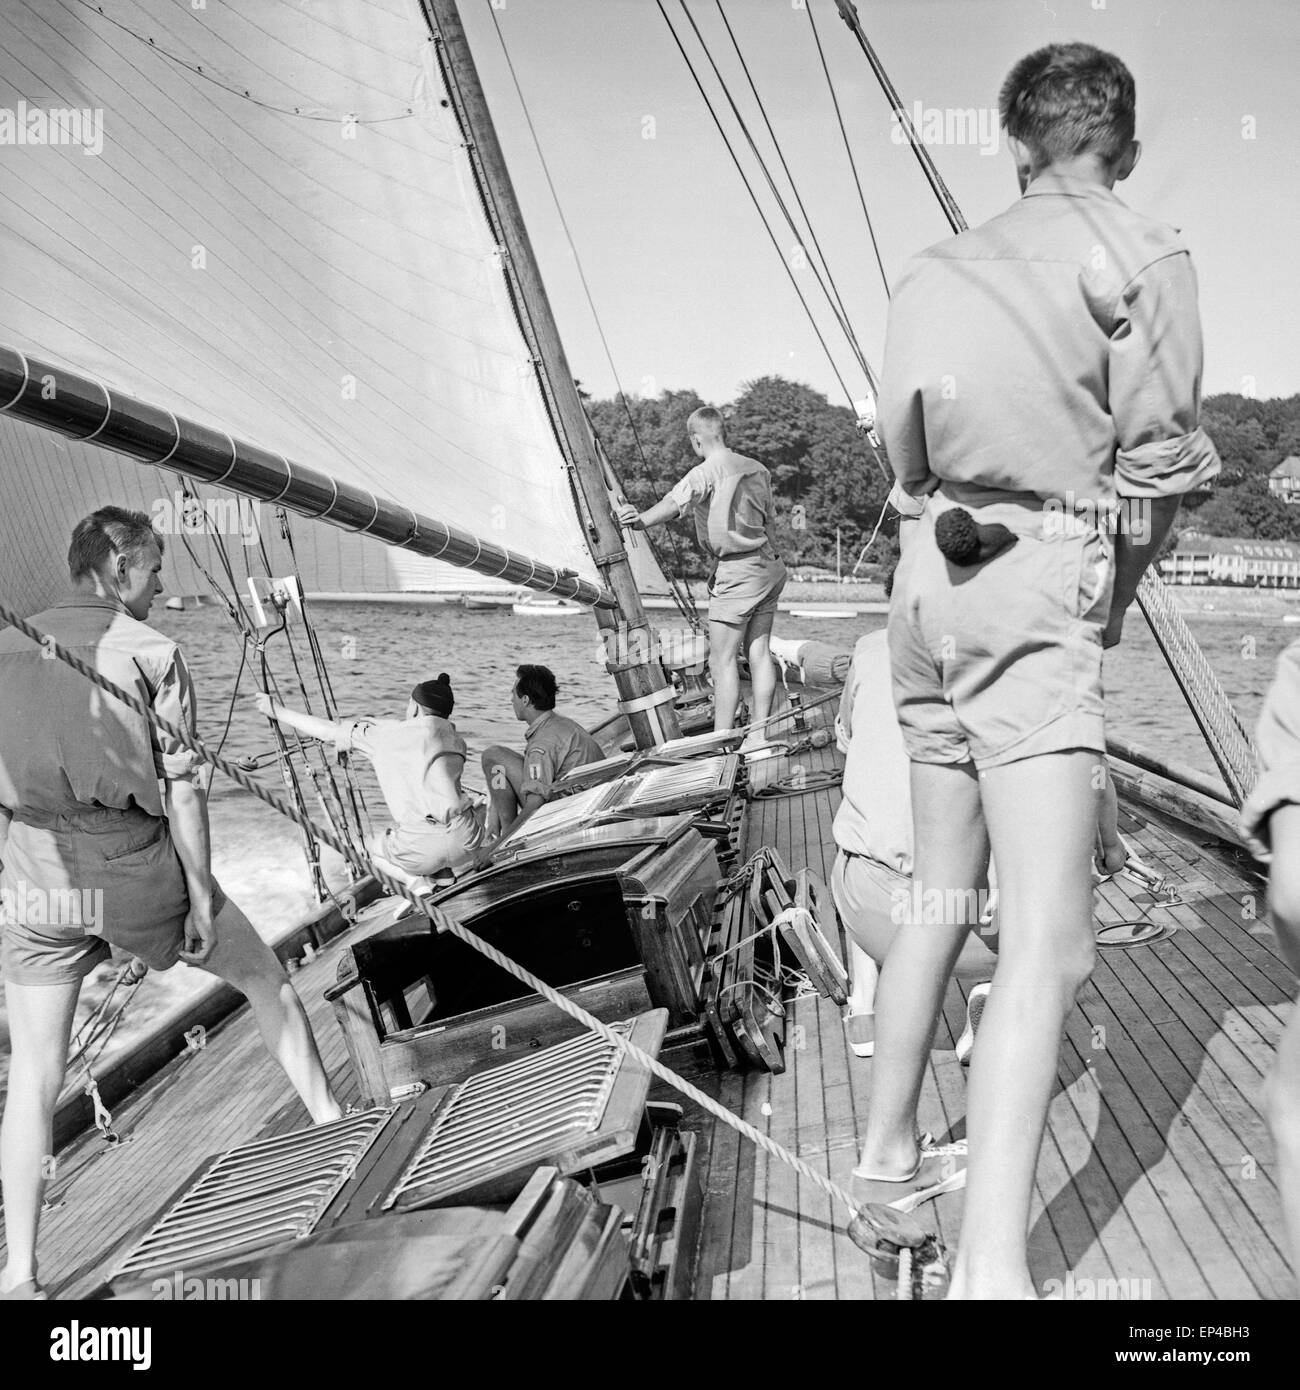 Schüler üben auf dem Ausbildungsschiff der Seemannsschule Falkenstein in Hamburg Blankenese, Deutschland 1950er Jahre. Pupils ex Stock Photo